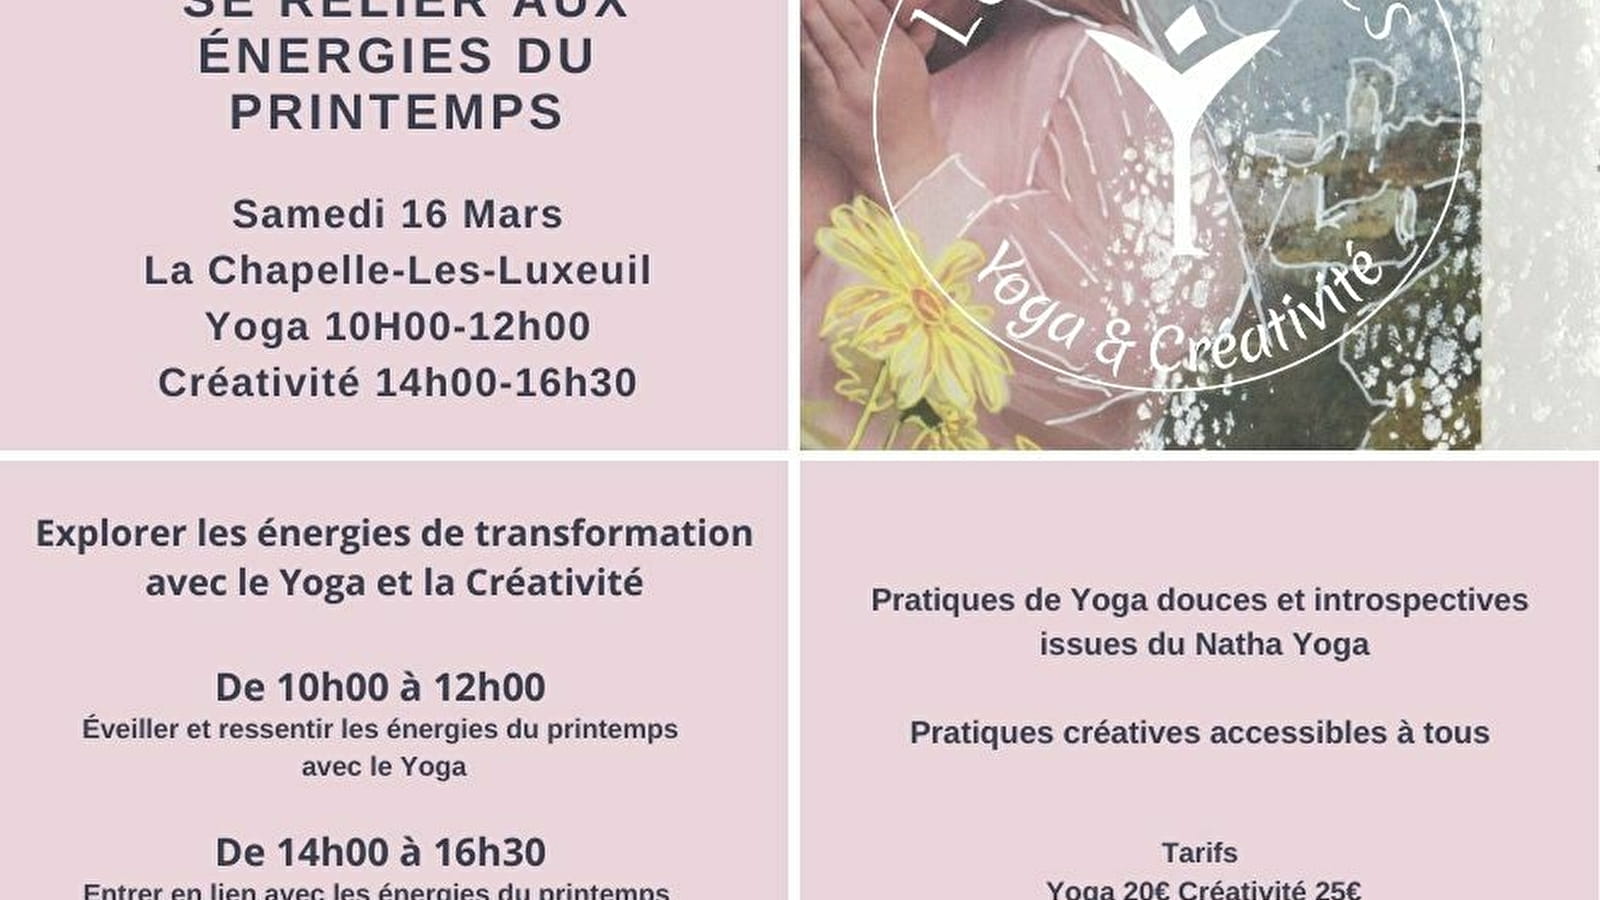 Atelier Yoga & créativité : se relier aux énergies du printemps